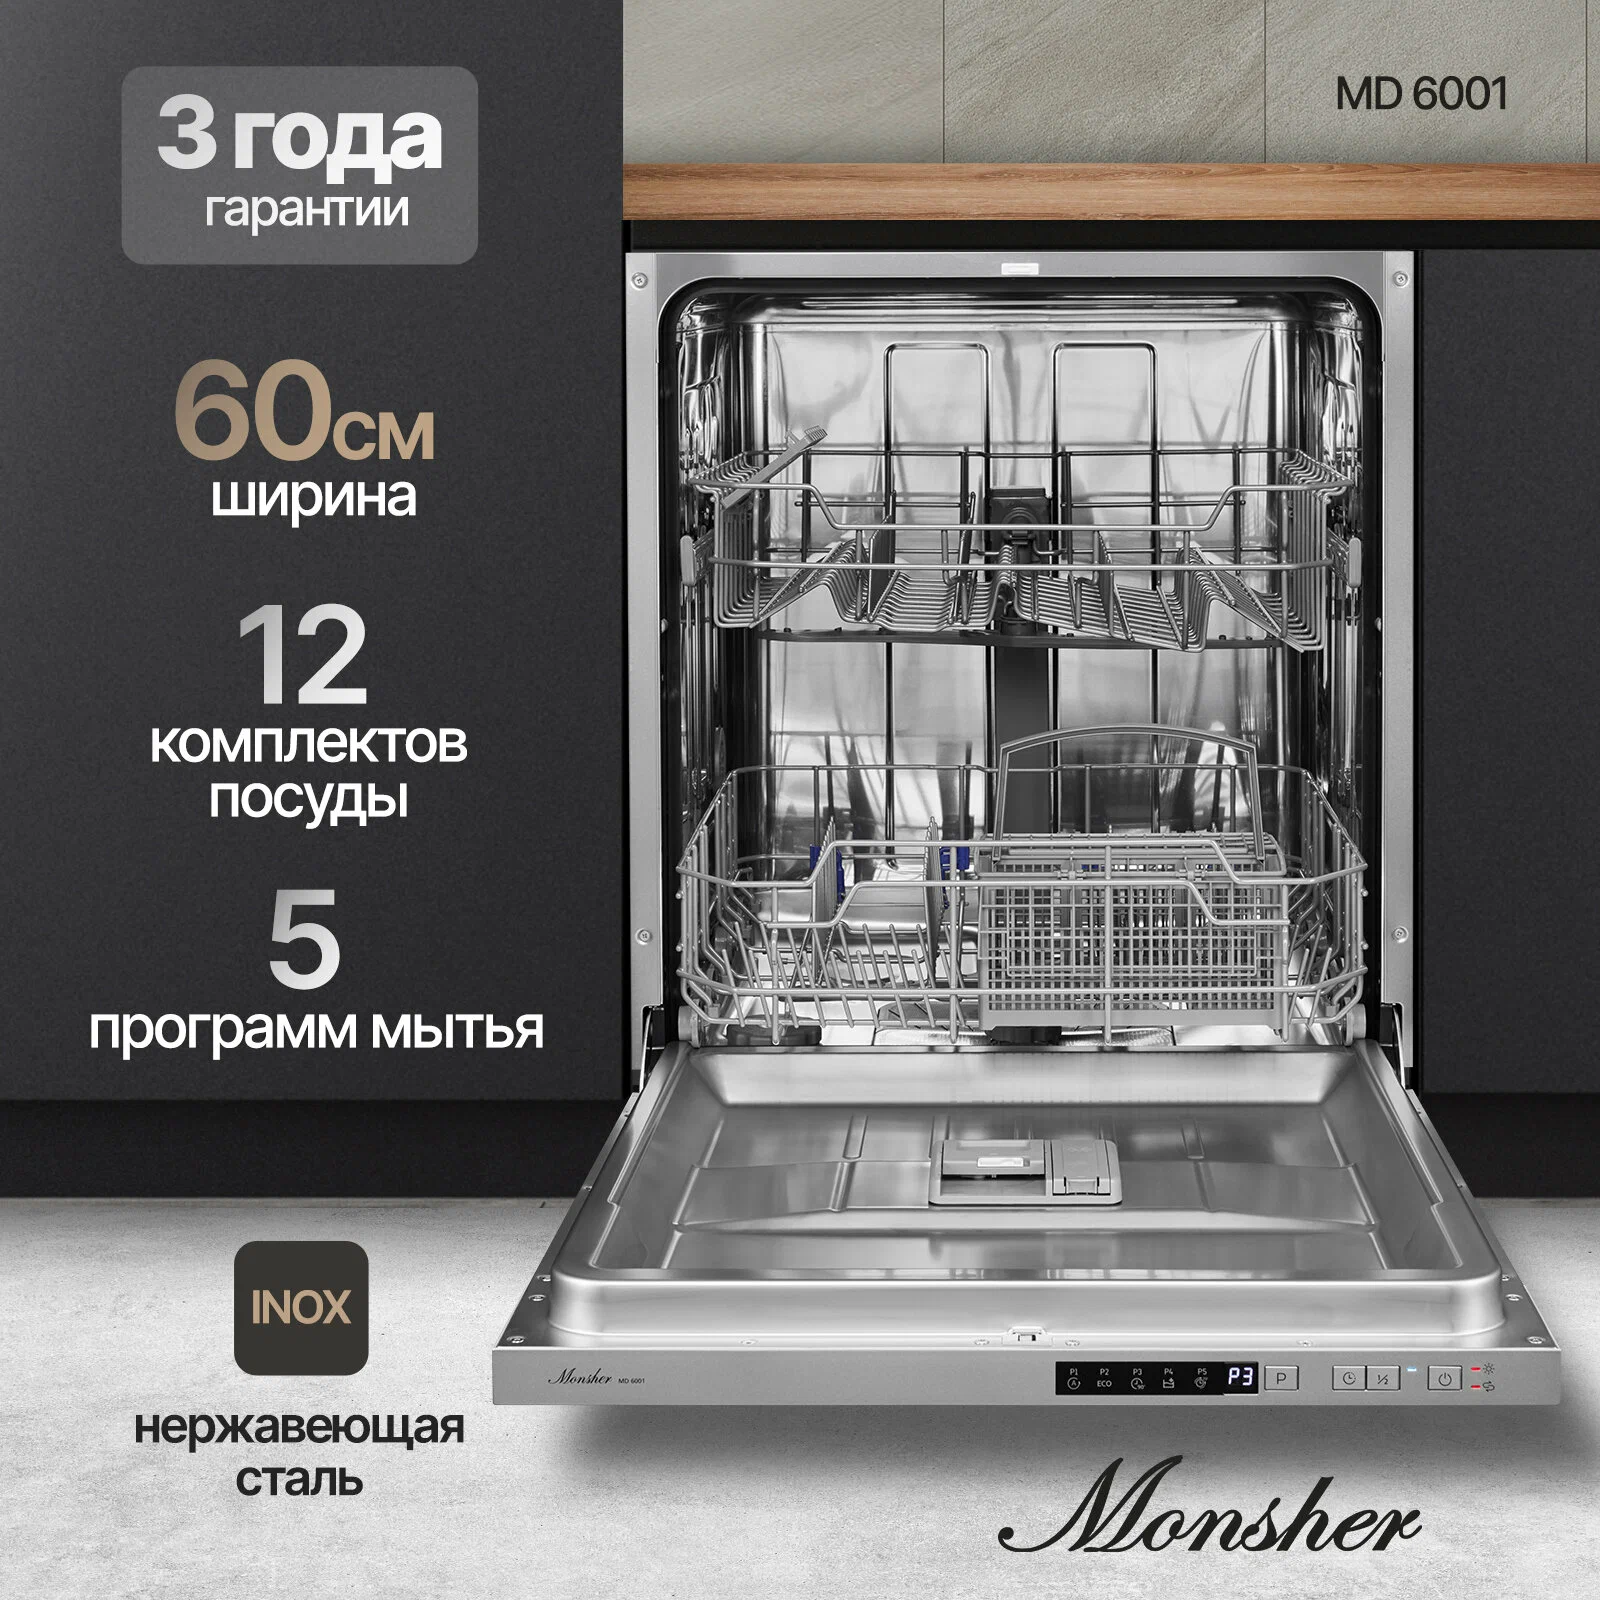 Посудомоечная машина встраиваемая полноразмерная Monsher MD 6001, нержавеющая сталь/ (76621), цвет нержавеющая сталь/